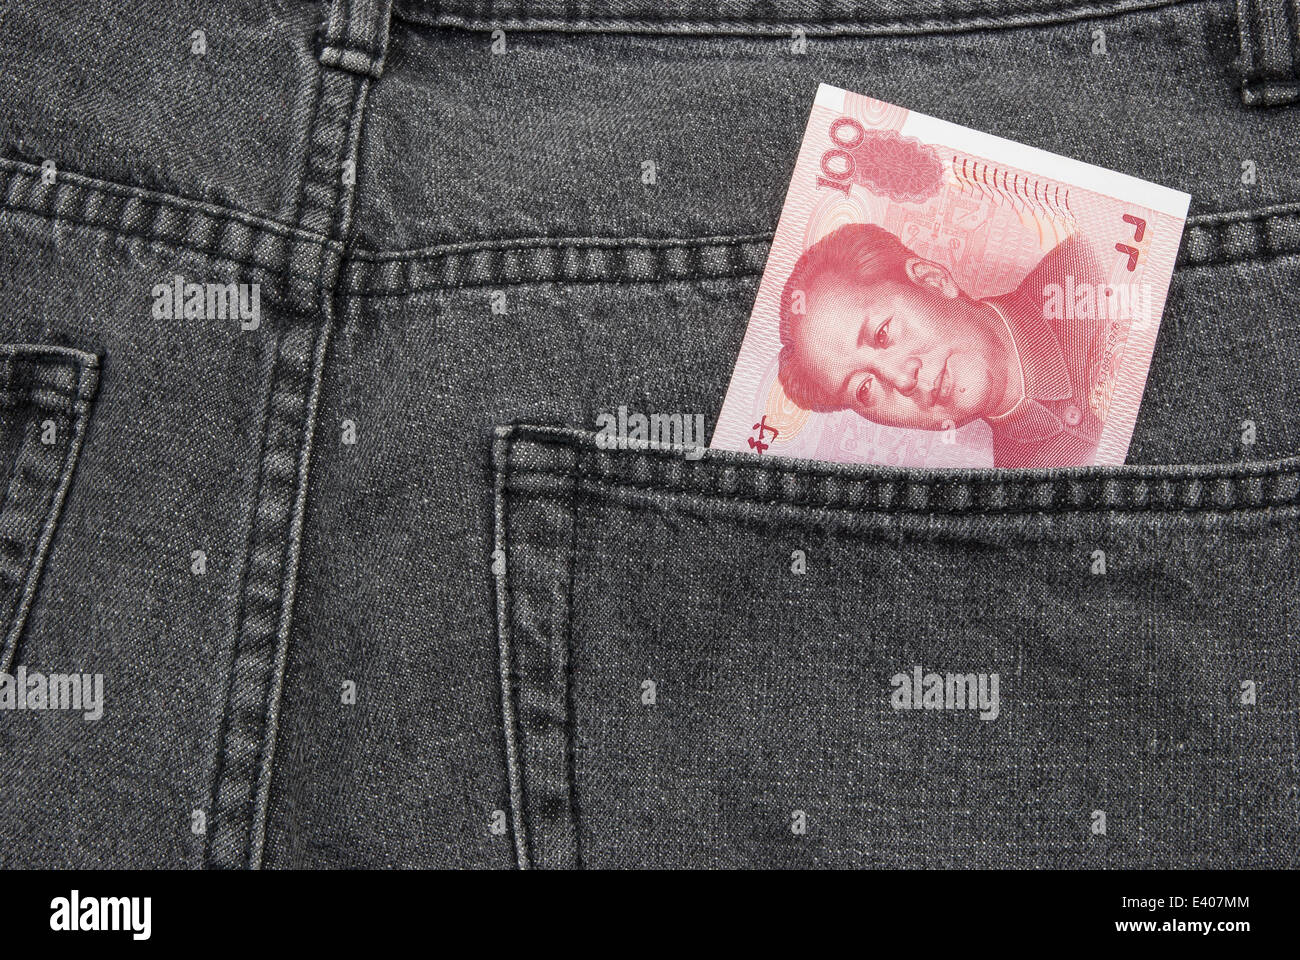 RMB pocket money Stock Photo